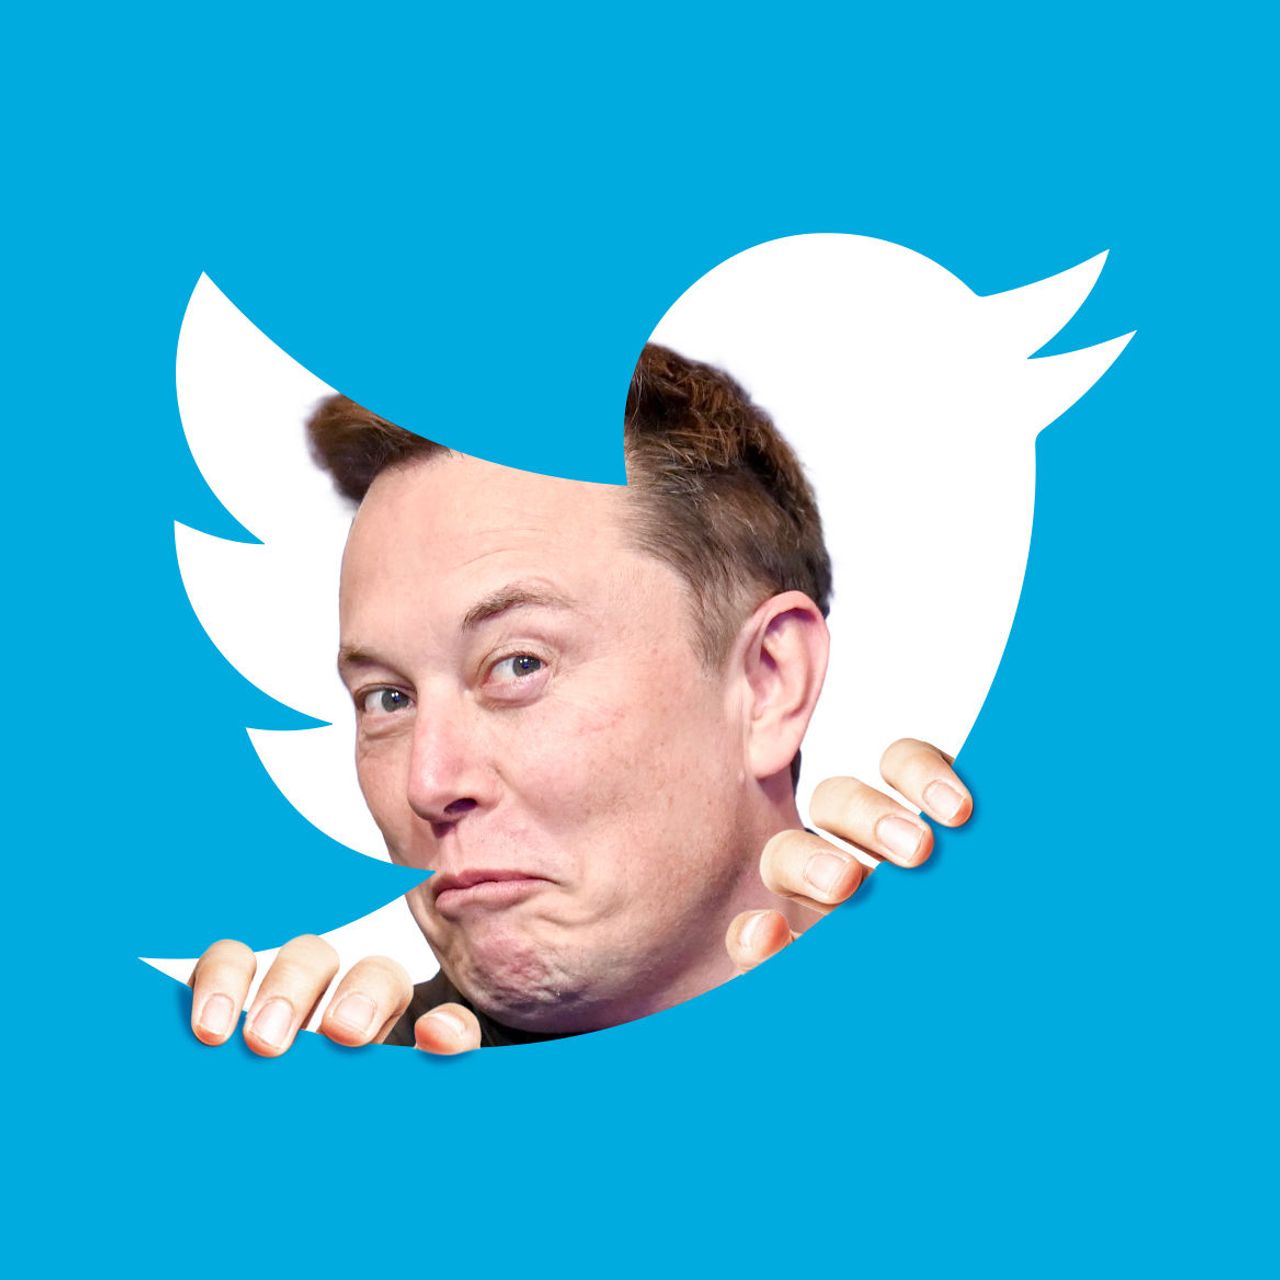 Elon Musk Nu Mai Cumpara Twitter-ul? Care Este Situatia Actuala?